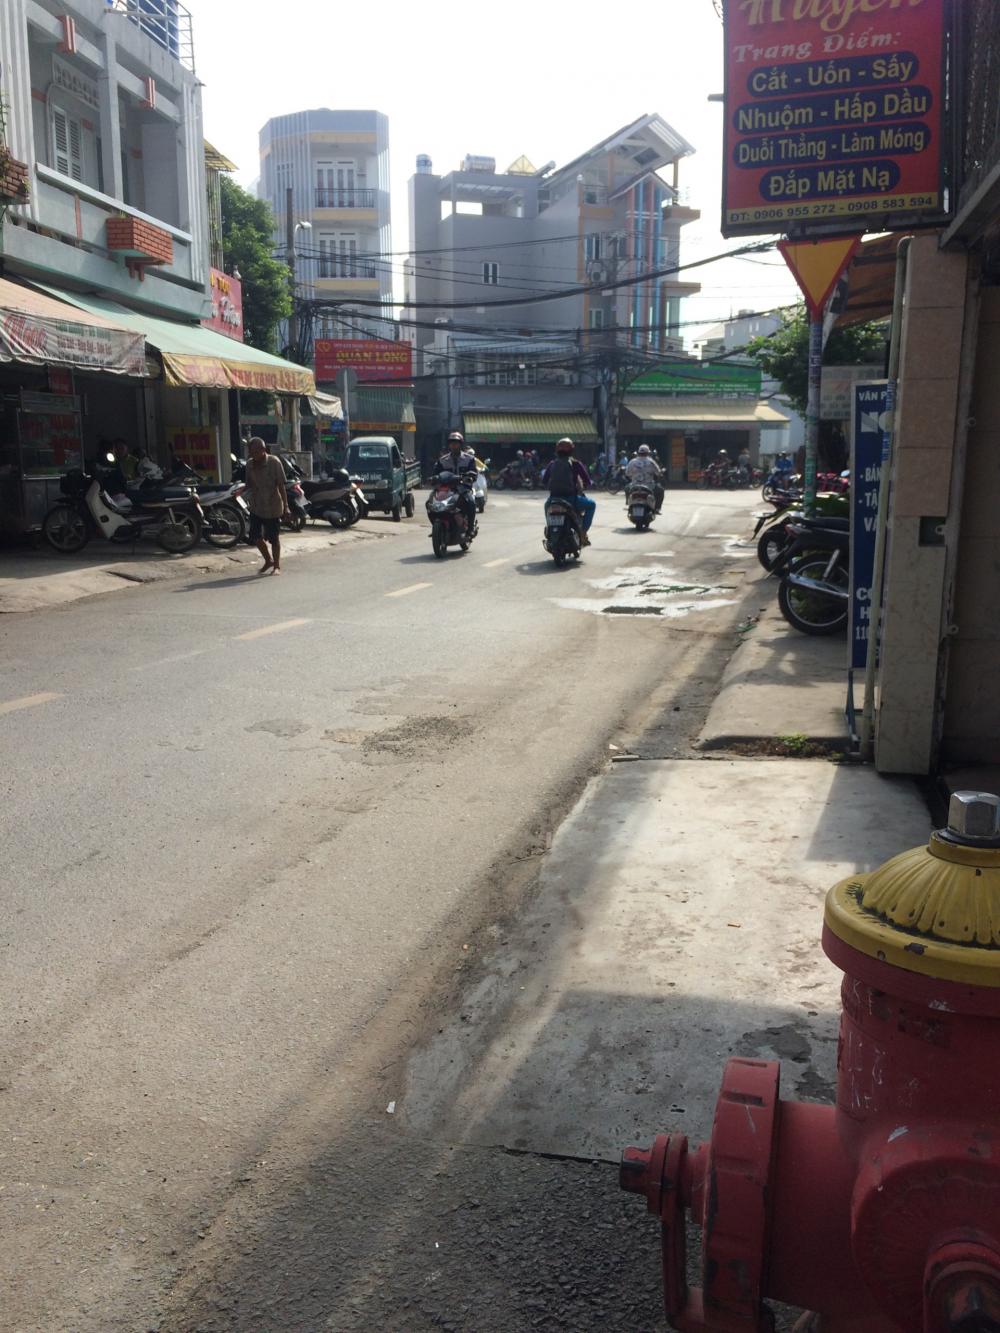 Bán nhà HXH đường Nguyên Hồng, Bình Thạnh, cách Phạm Văn Đồng 500m, gần chợ, khu yên tĩnh.